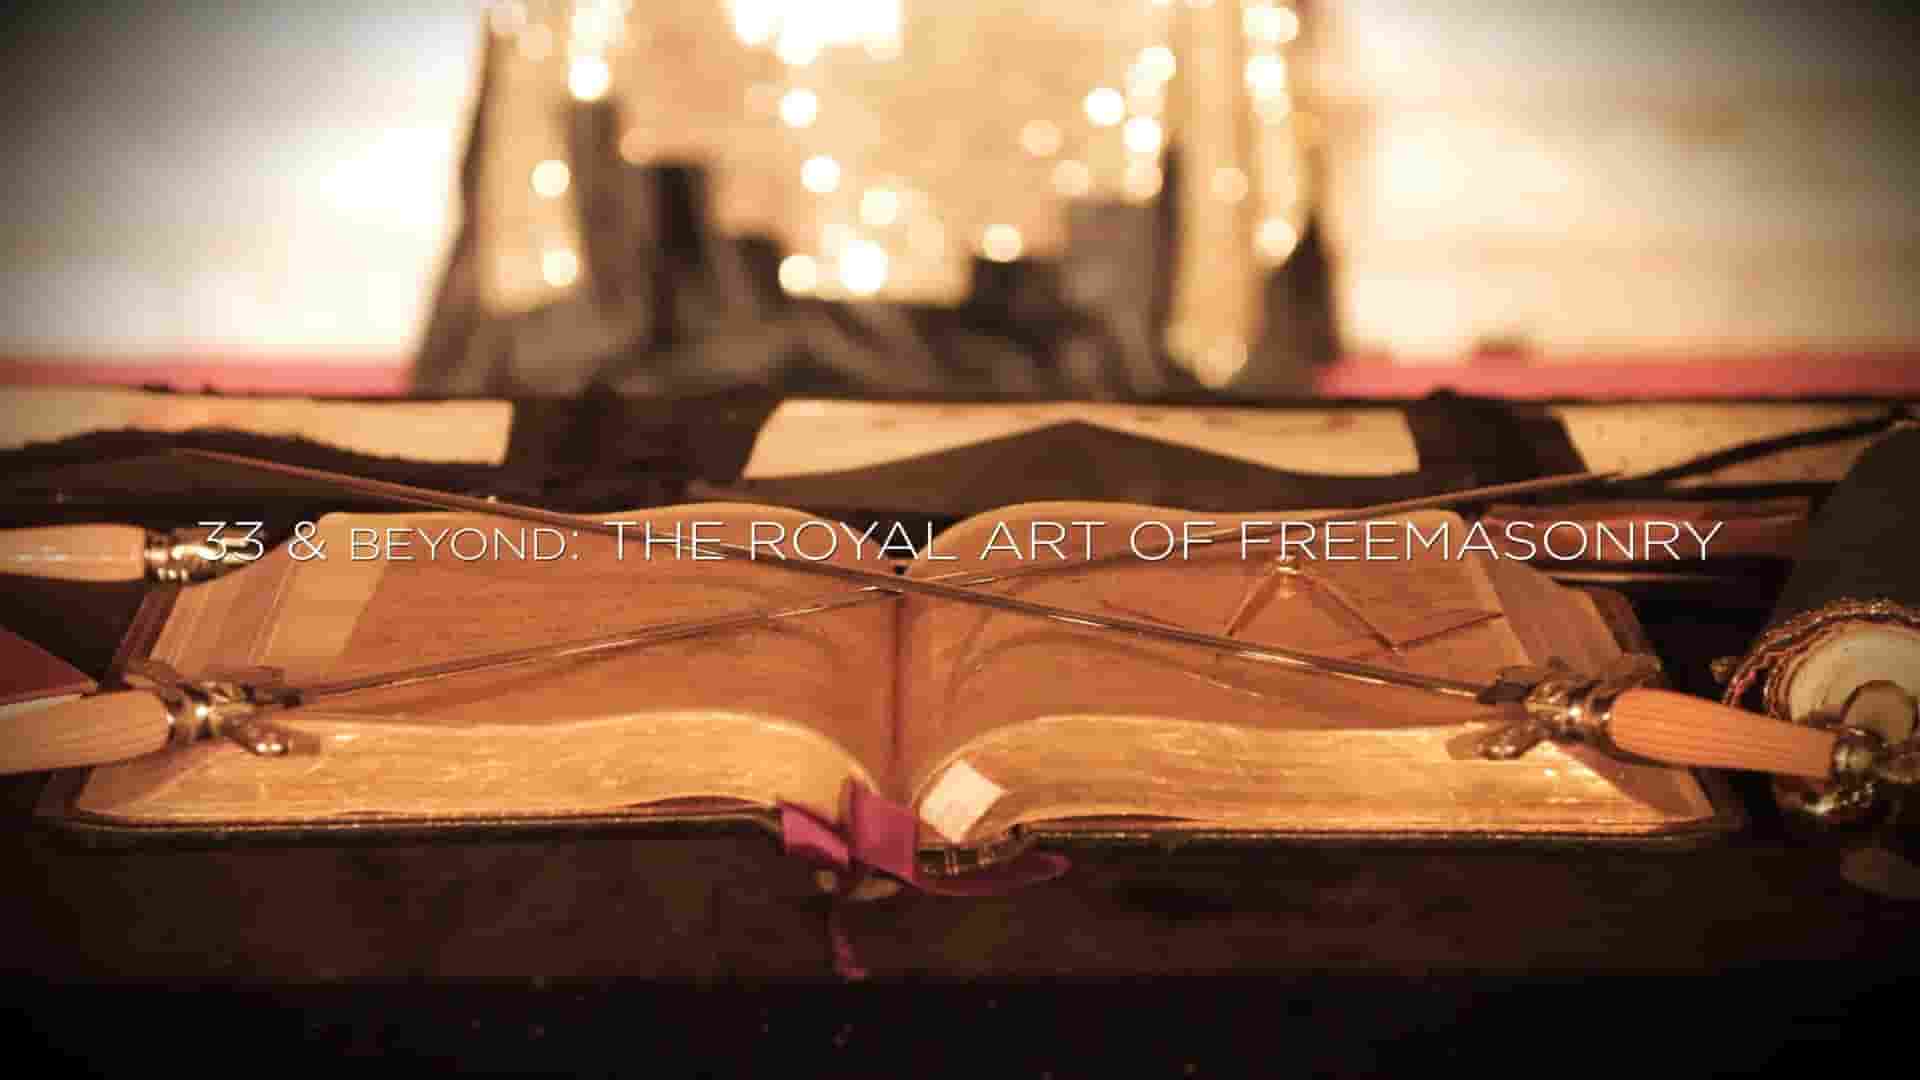 美国纪录片《共济会的皇家艺术 33 & Beyond: The Royal Art of Freemasonry 2017》全1集 英语中英双字 1080P高清网盘下载